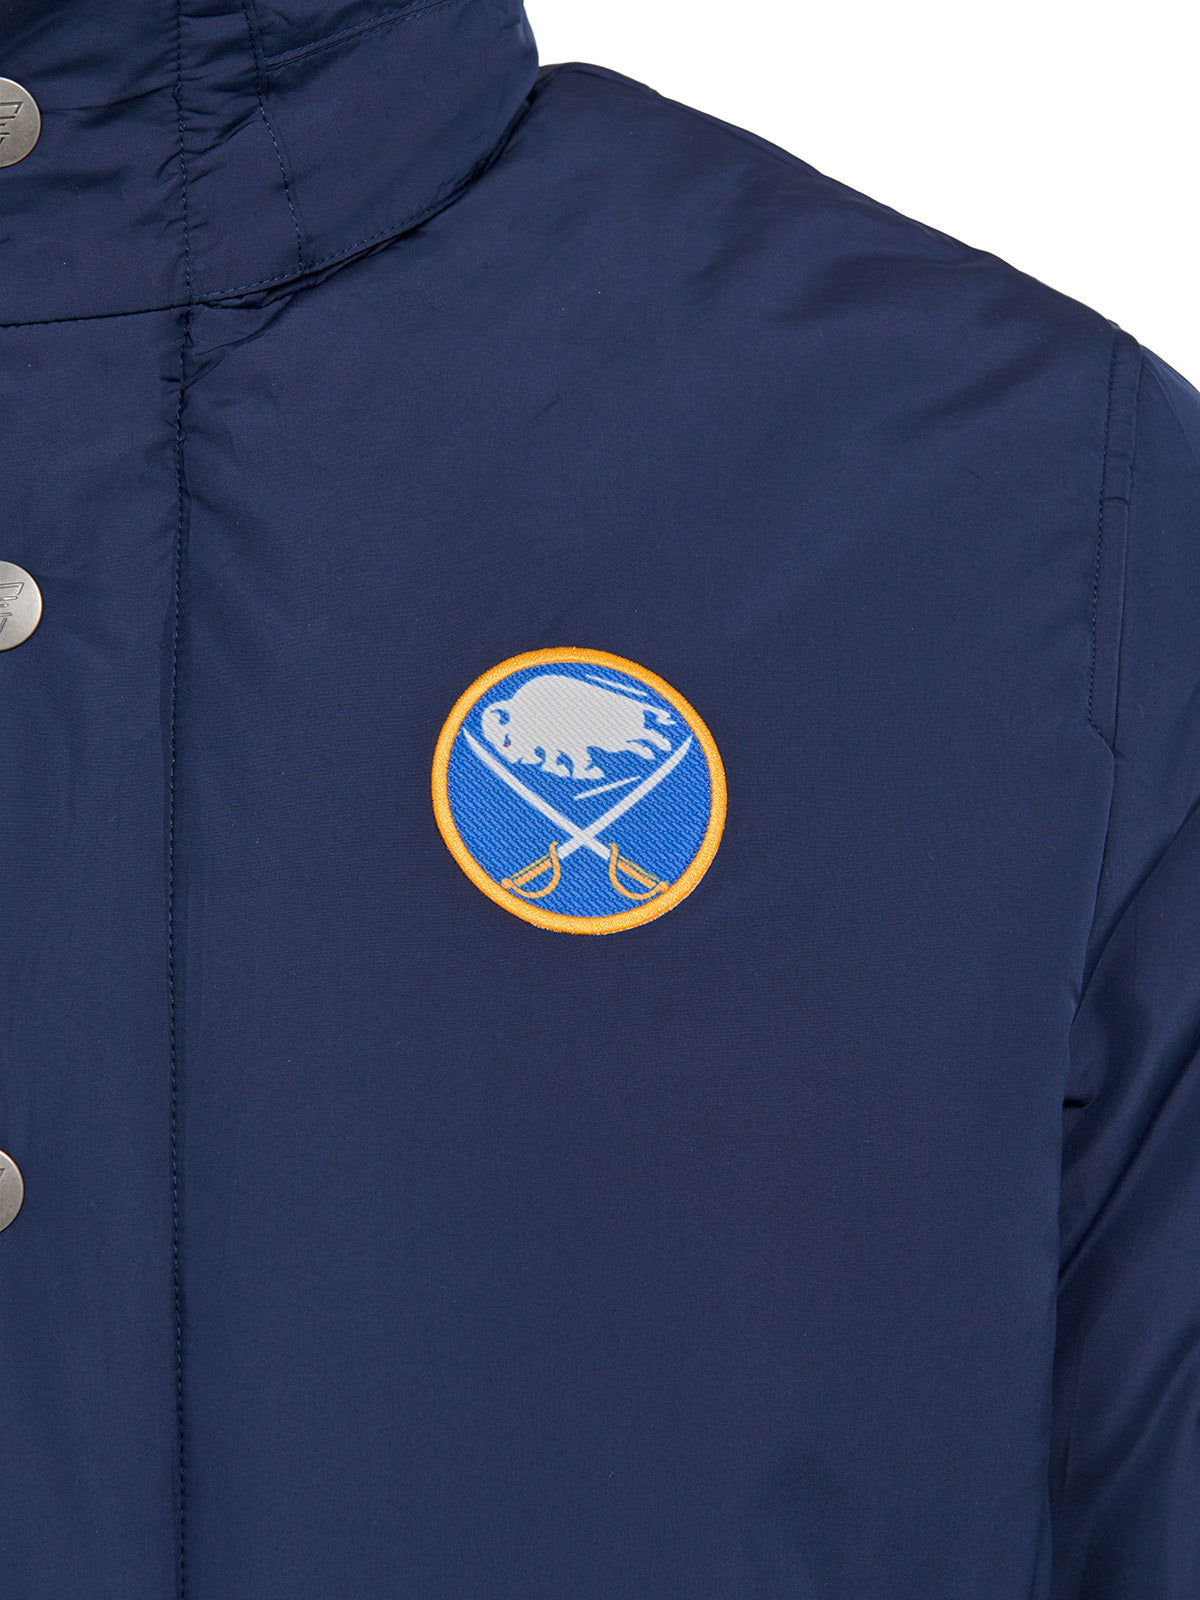 Buffalo Sabres Coach's Jacket